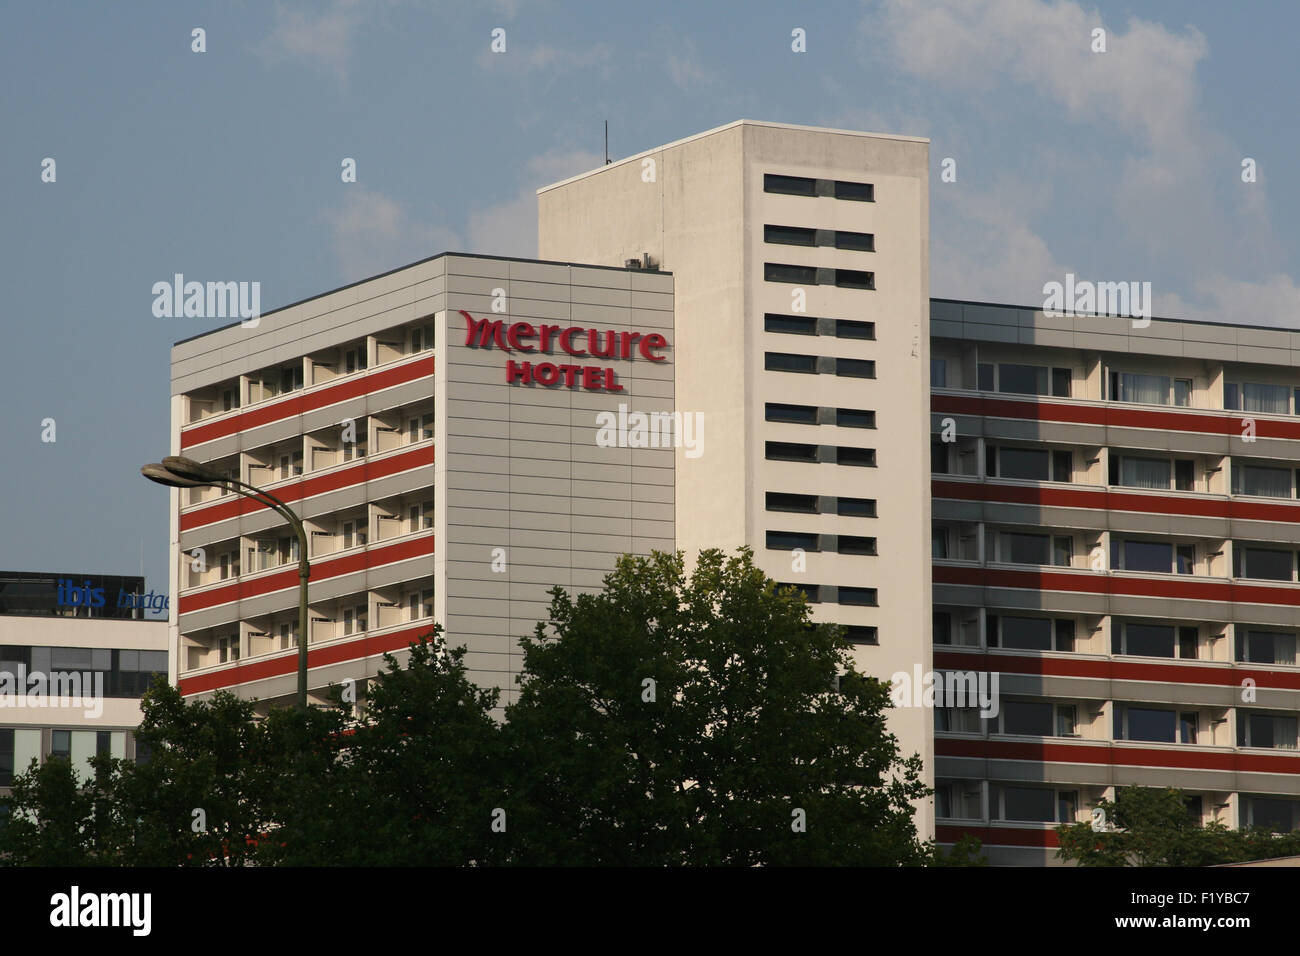 MERCURE HOTEL Foto de stock